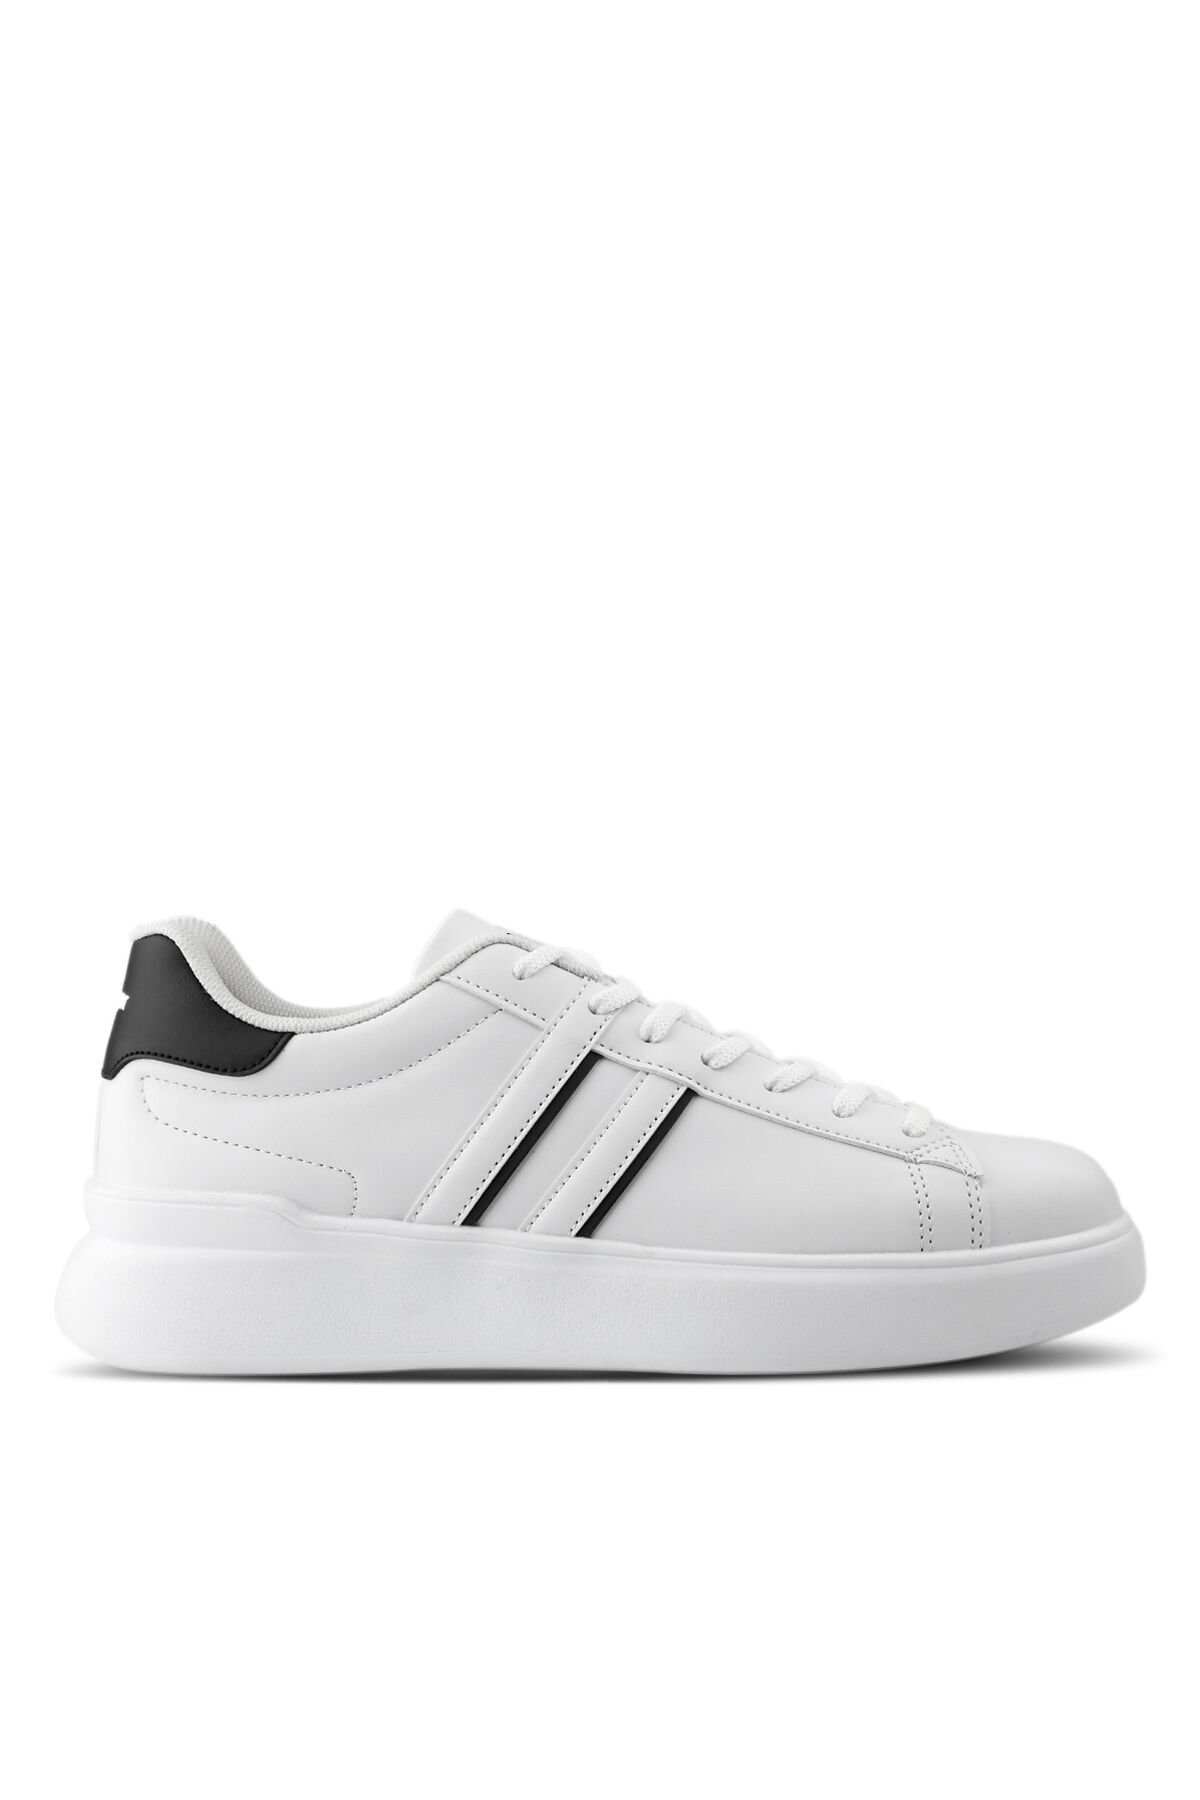 Slazenger BALTAZAR Sneaker Erkek Ayakkabı Beyaz / Siyah - Thumbnail